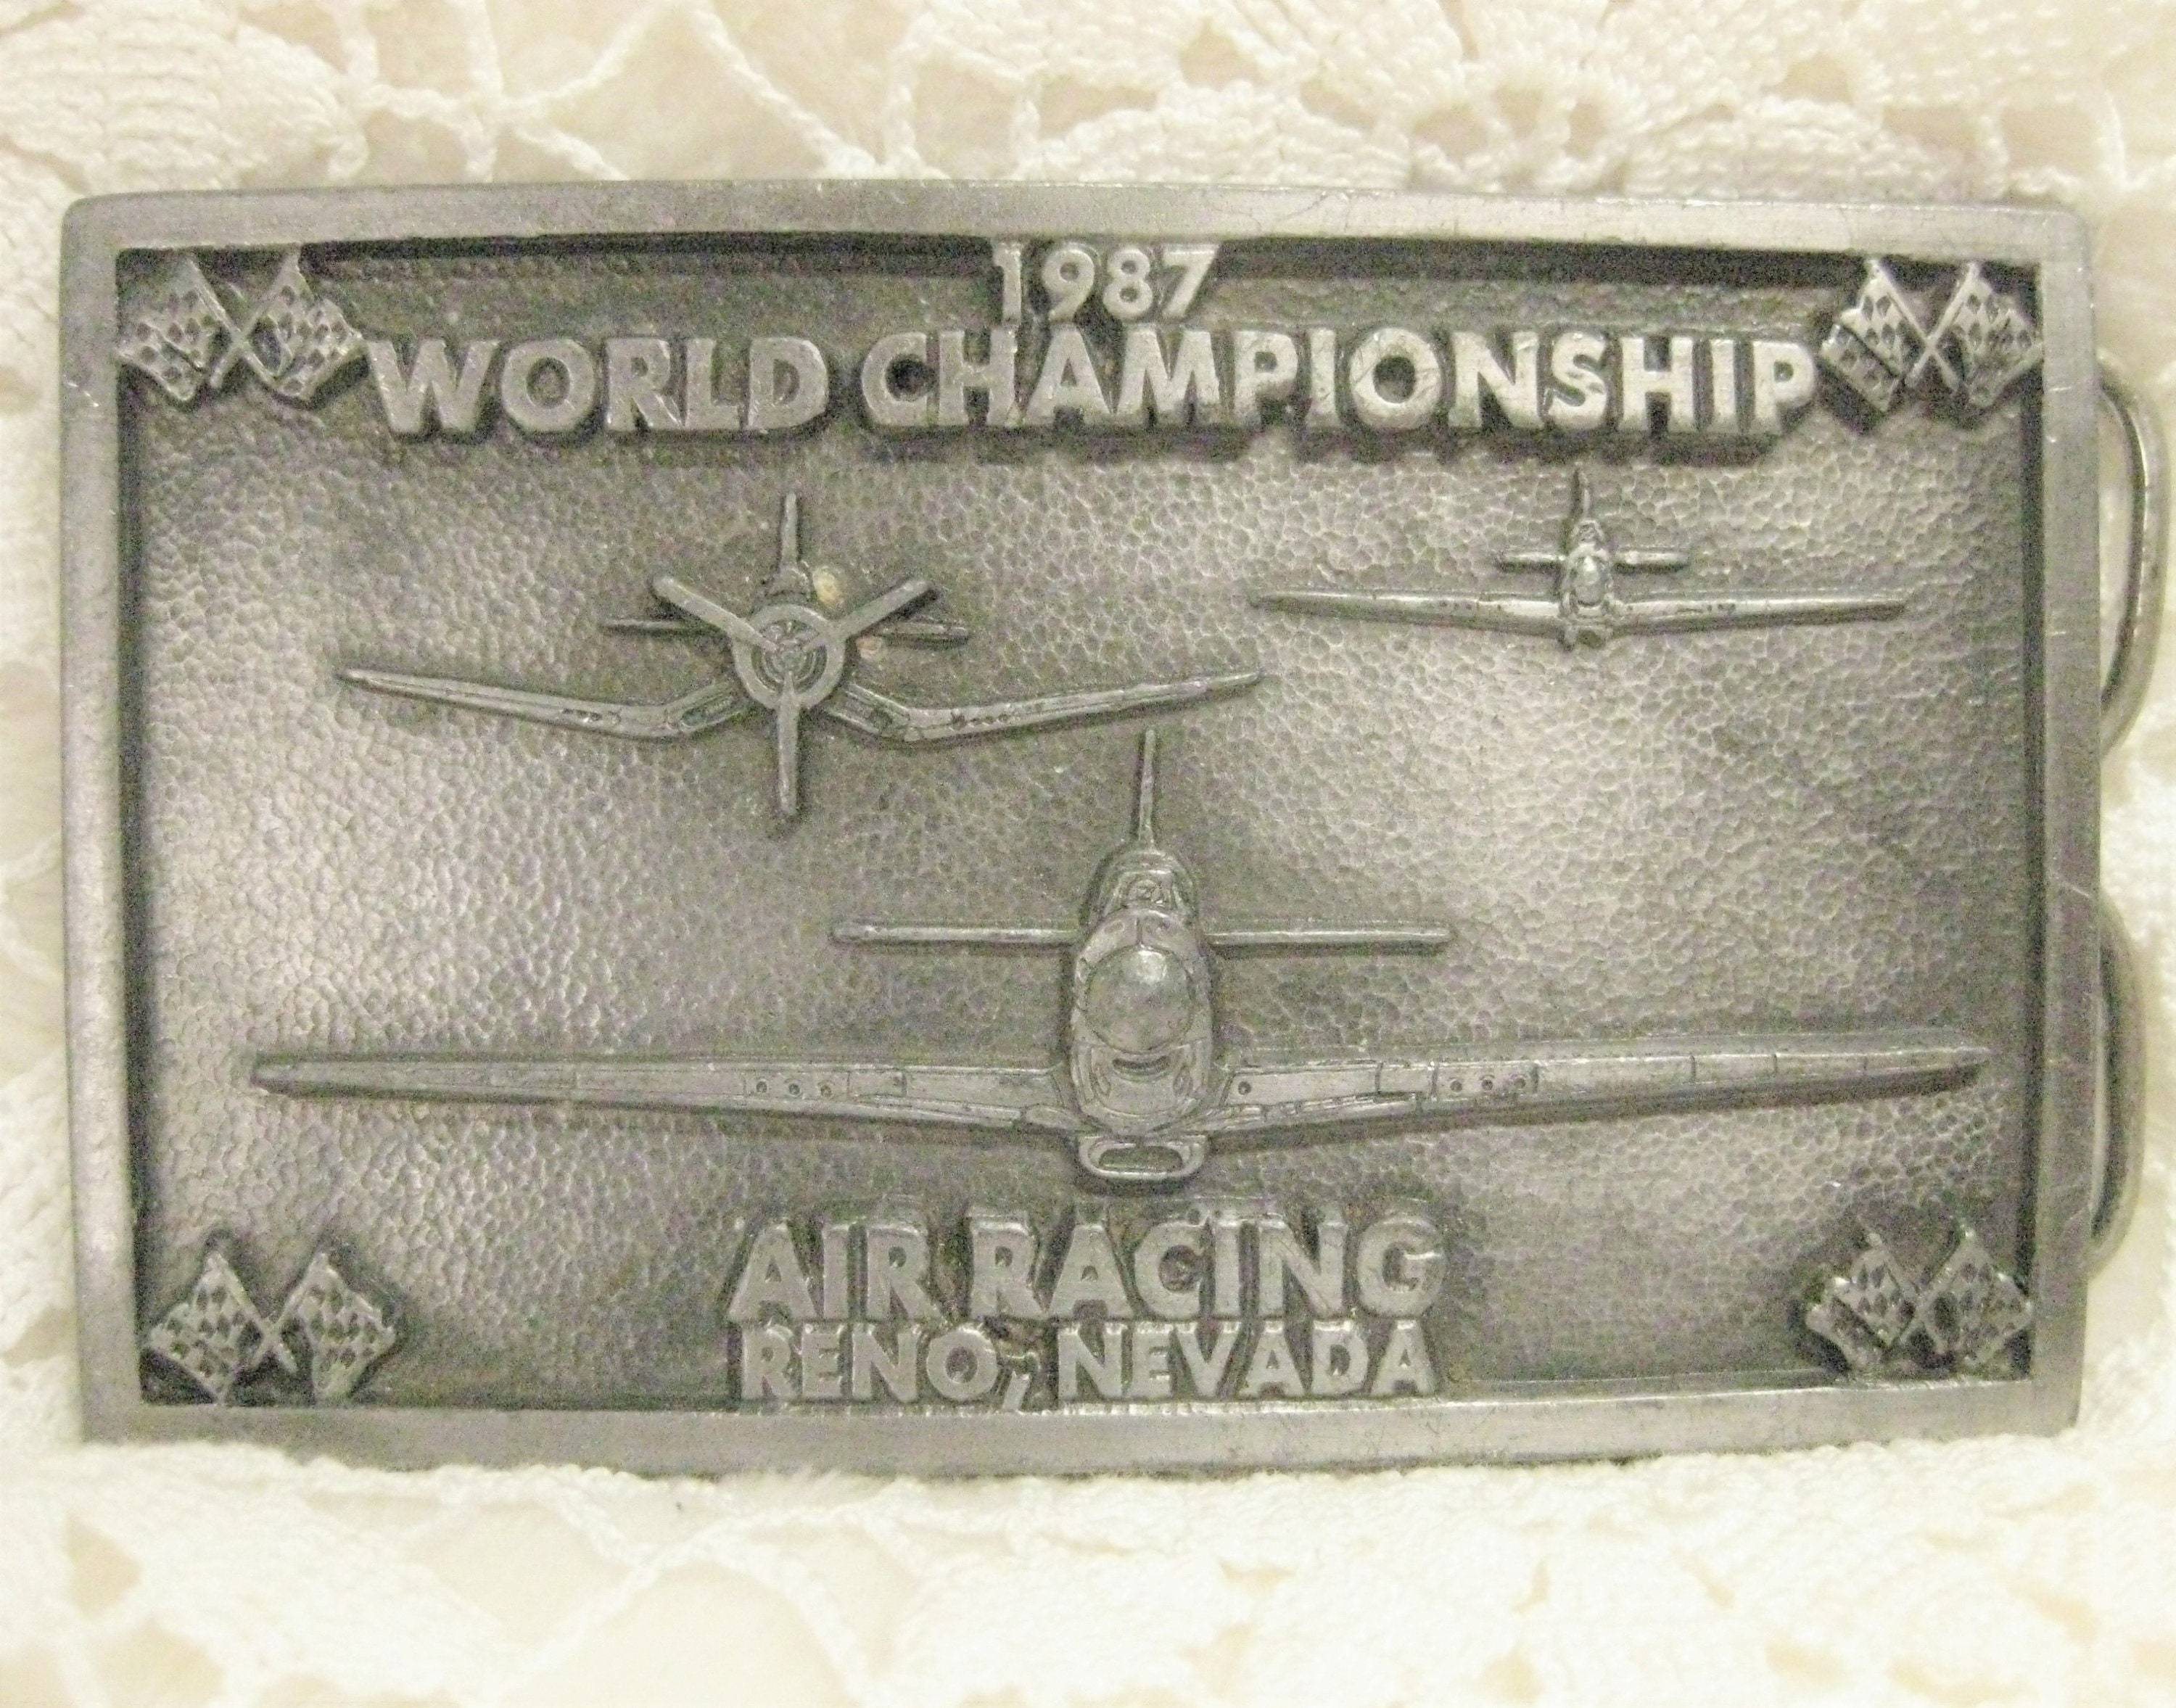 Vintage Air Racing World Championship Reno Nevada 1987 pic